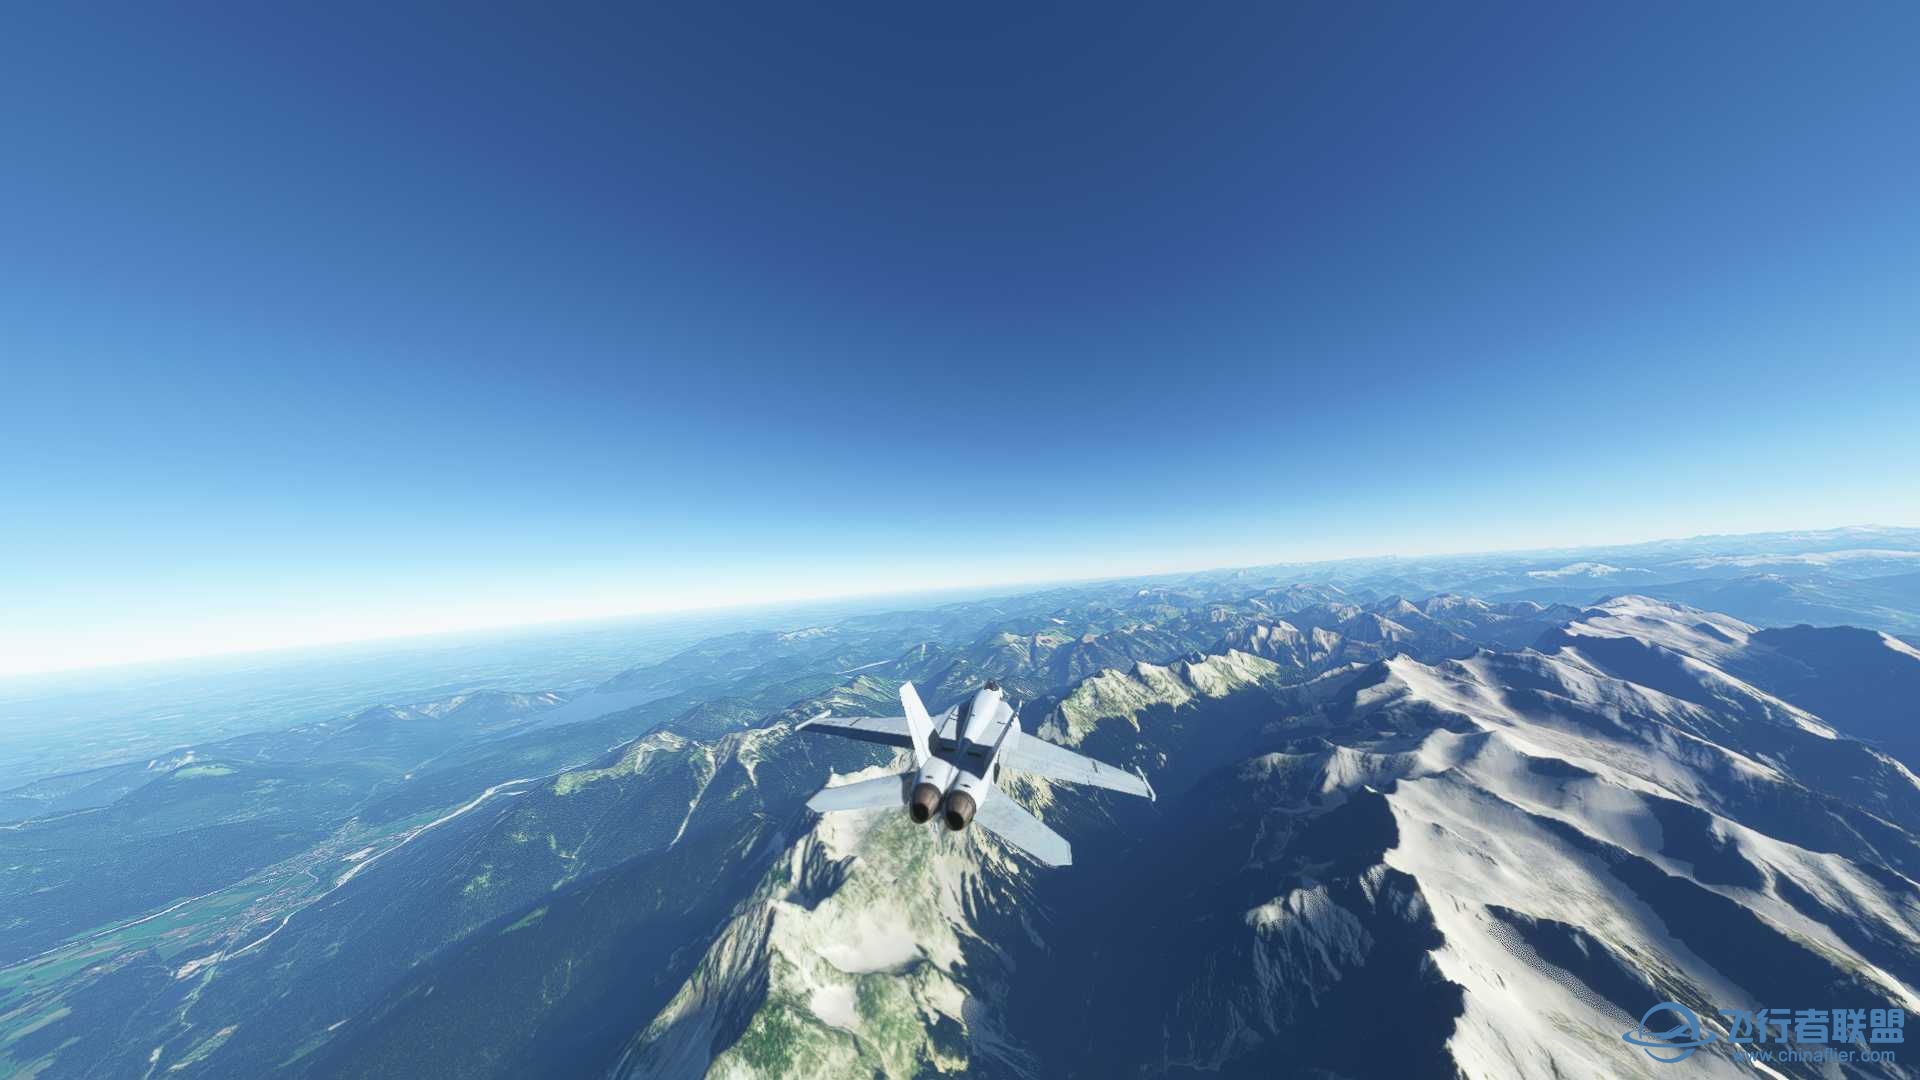 阿尔卑斯山脉附近飞行无法进行游戏-2579 